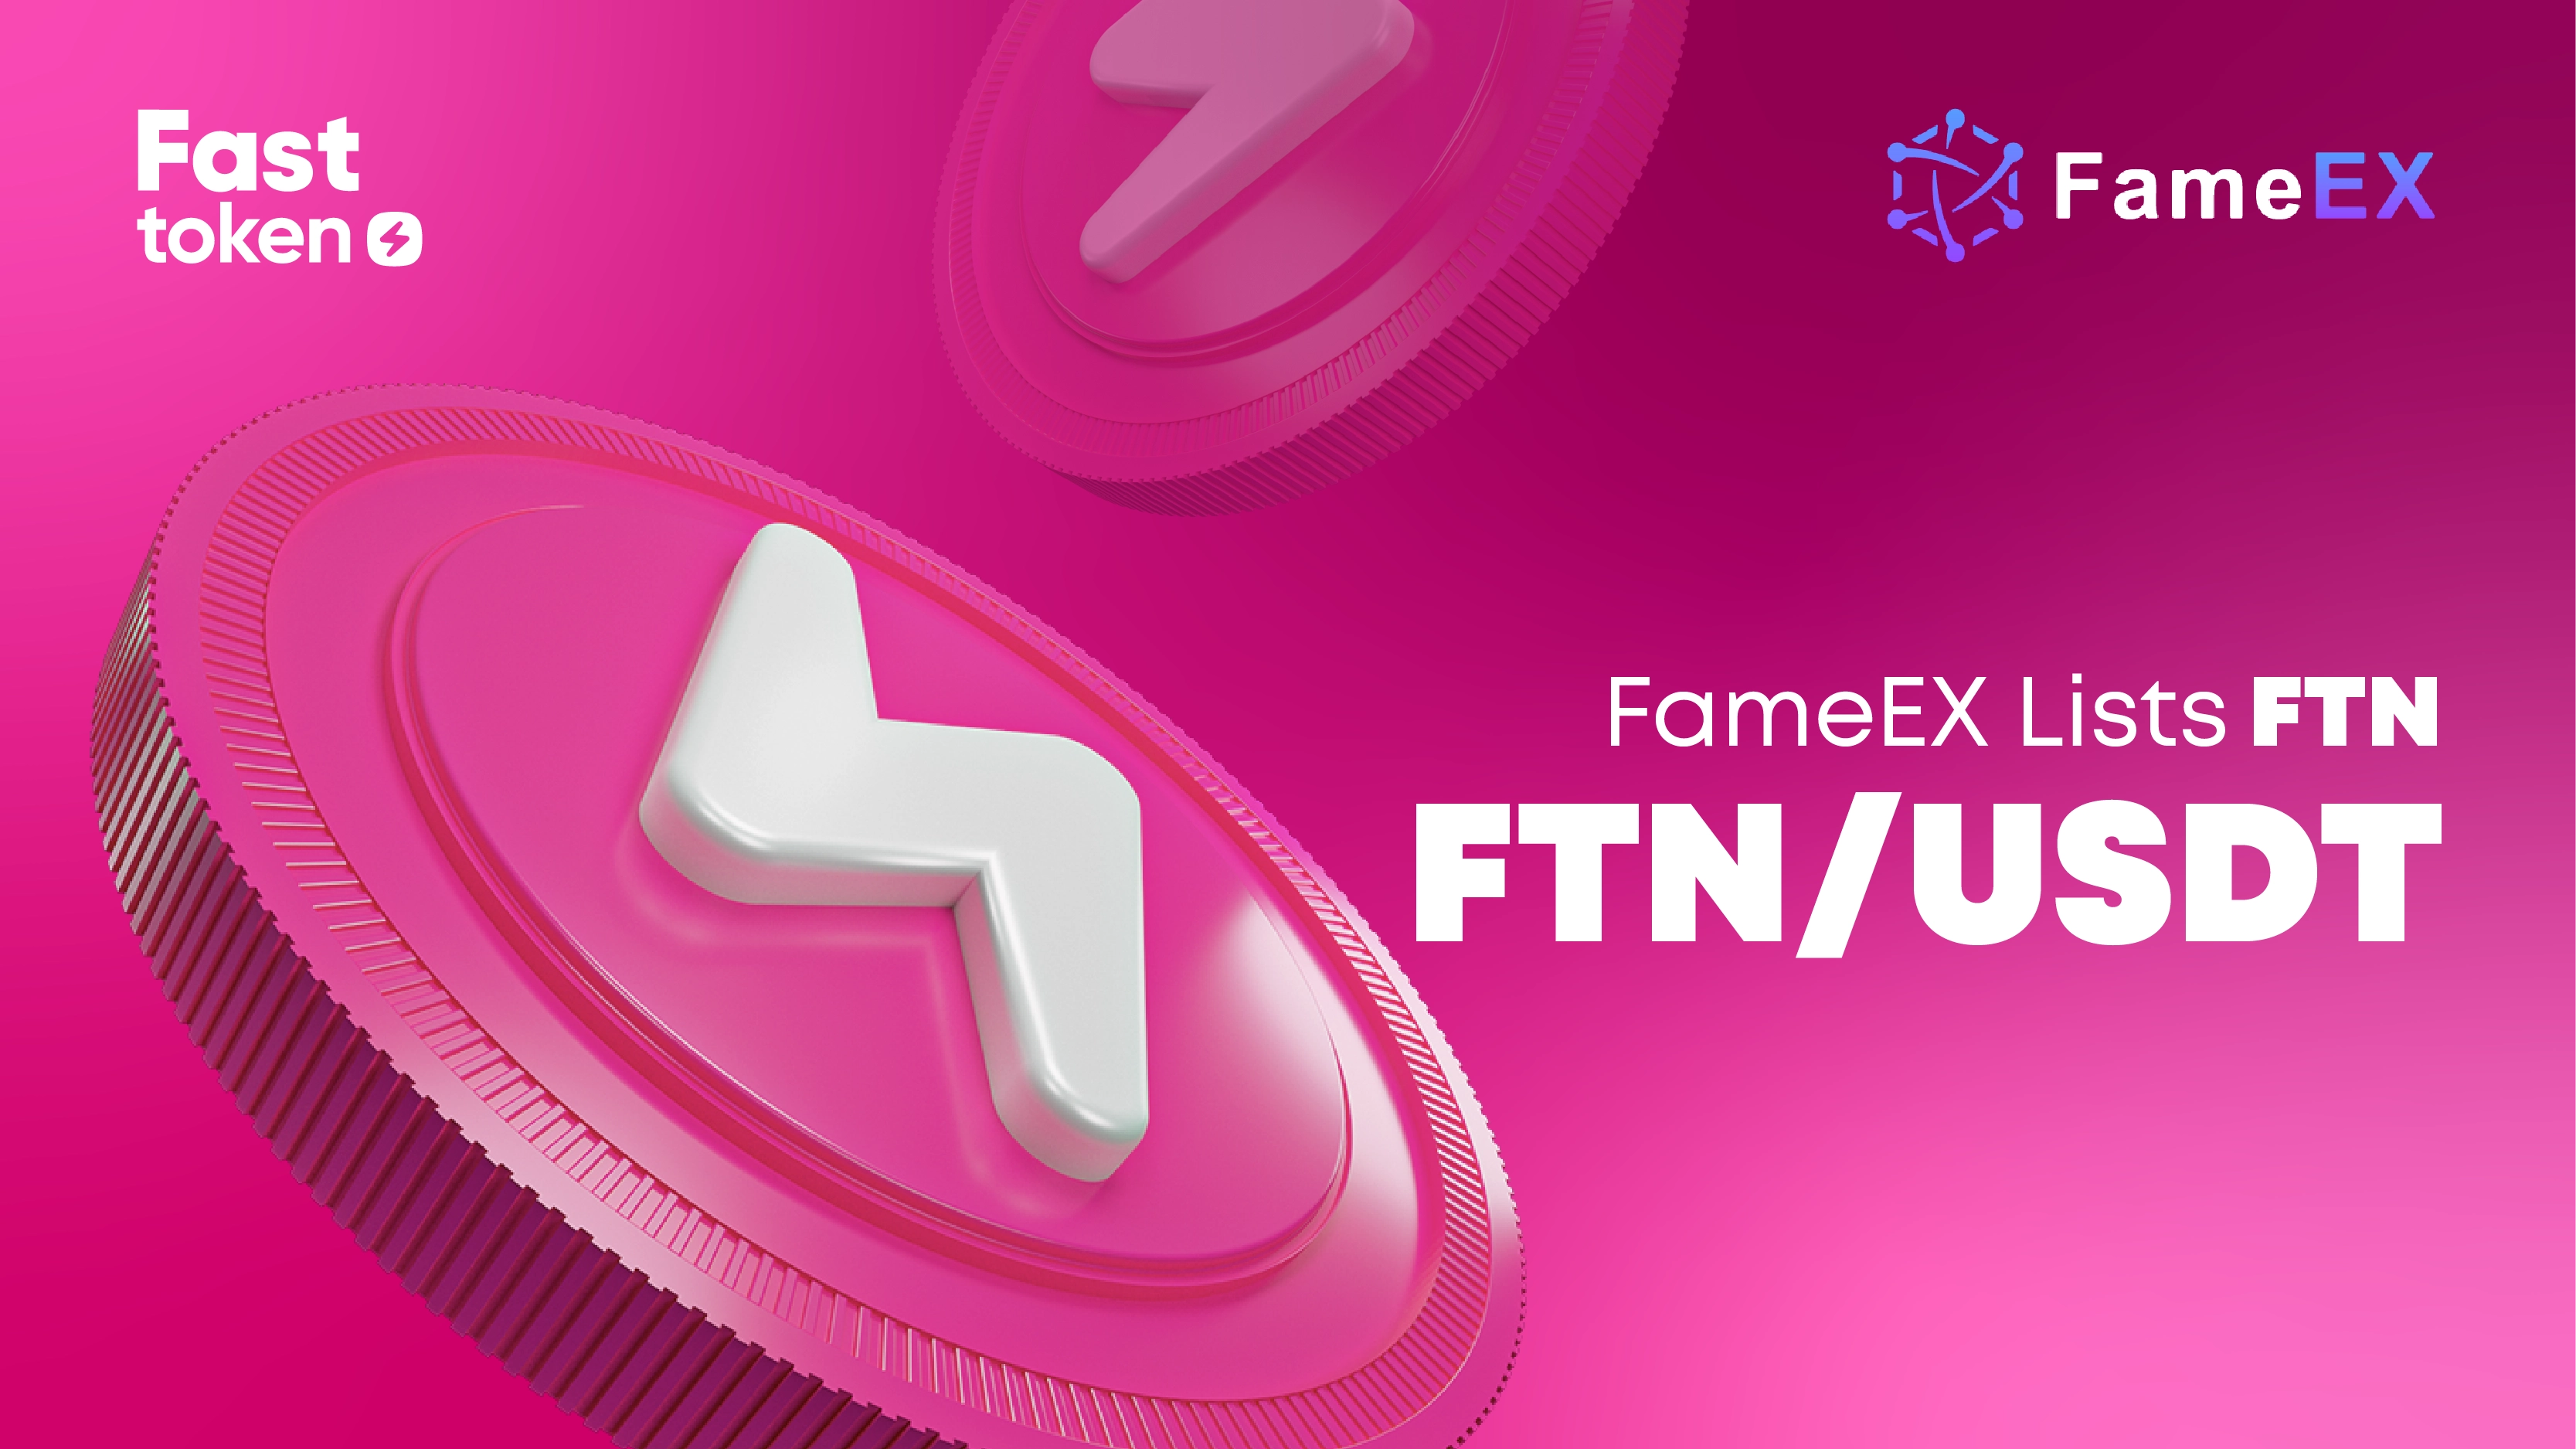 Fasttoken (FTN) désormais répertorié sur FameEX